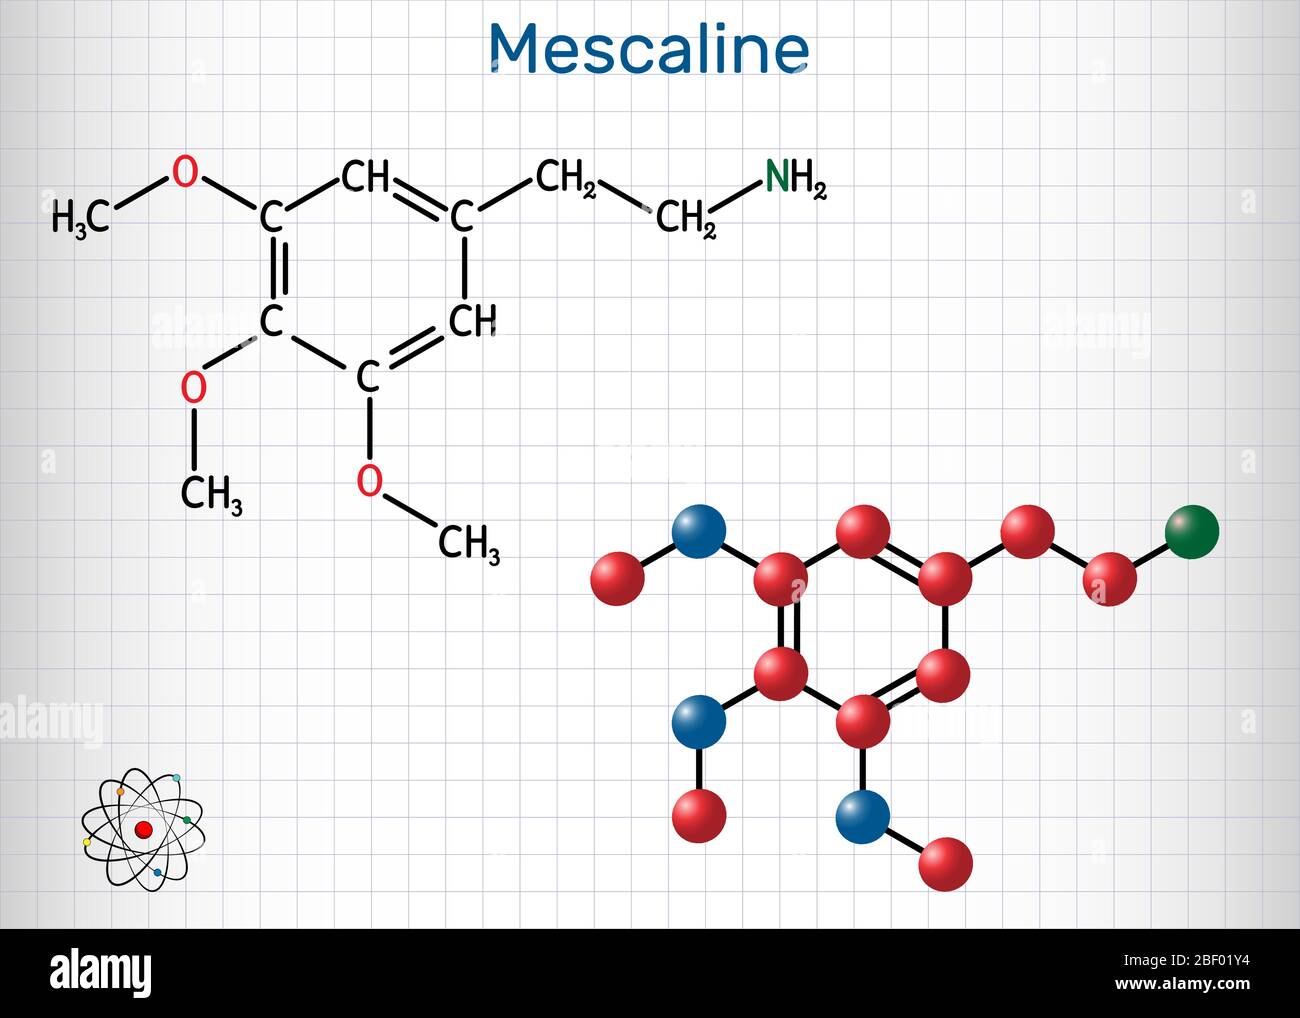 Meskalin-Molekül. Es ist halluzinogen, psychedelisch, Phenethylamin Alkaloid. Strukturelle chemische Formel und Molekülmodell. Blatt Papier in a c Stock Vektor